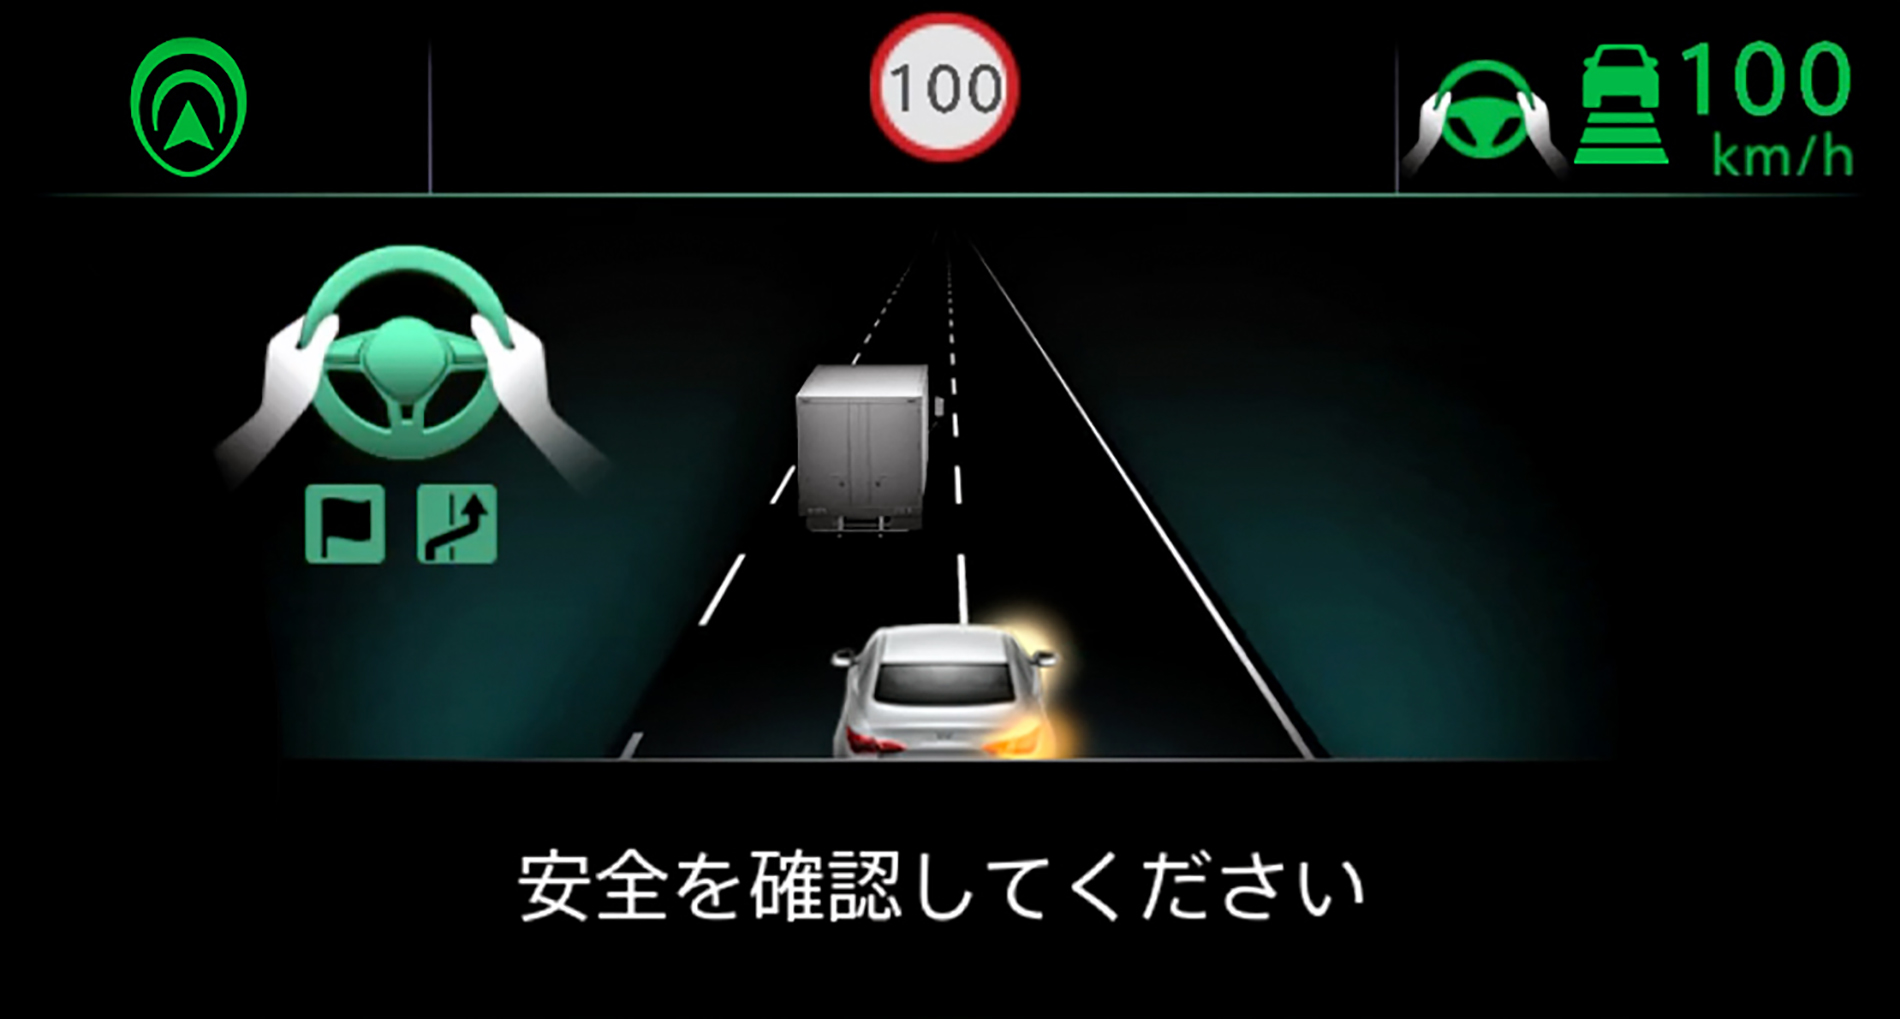 System wspomagania kierowcy w nowym Nissanie Skyline